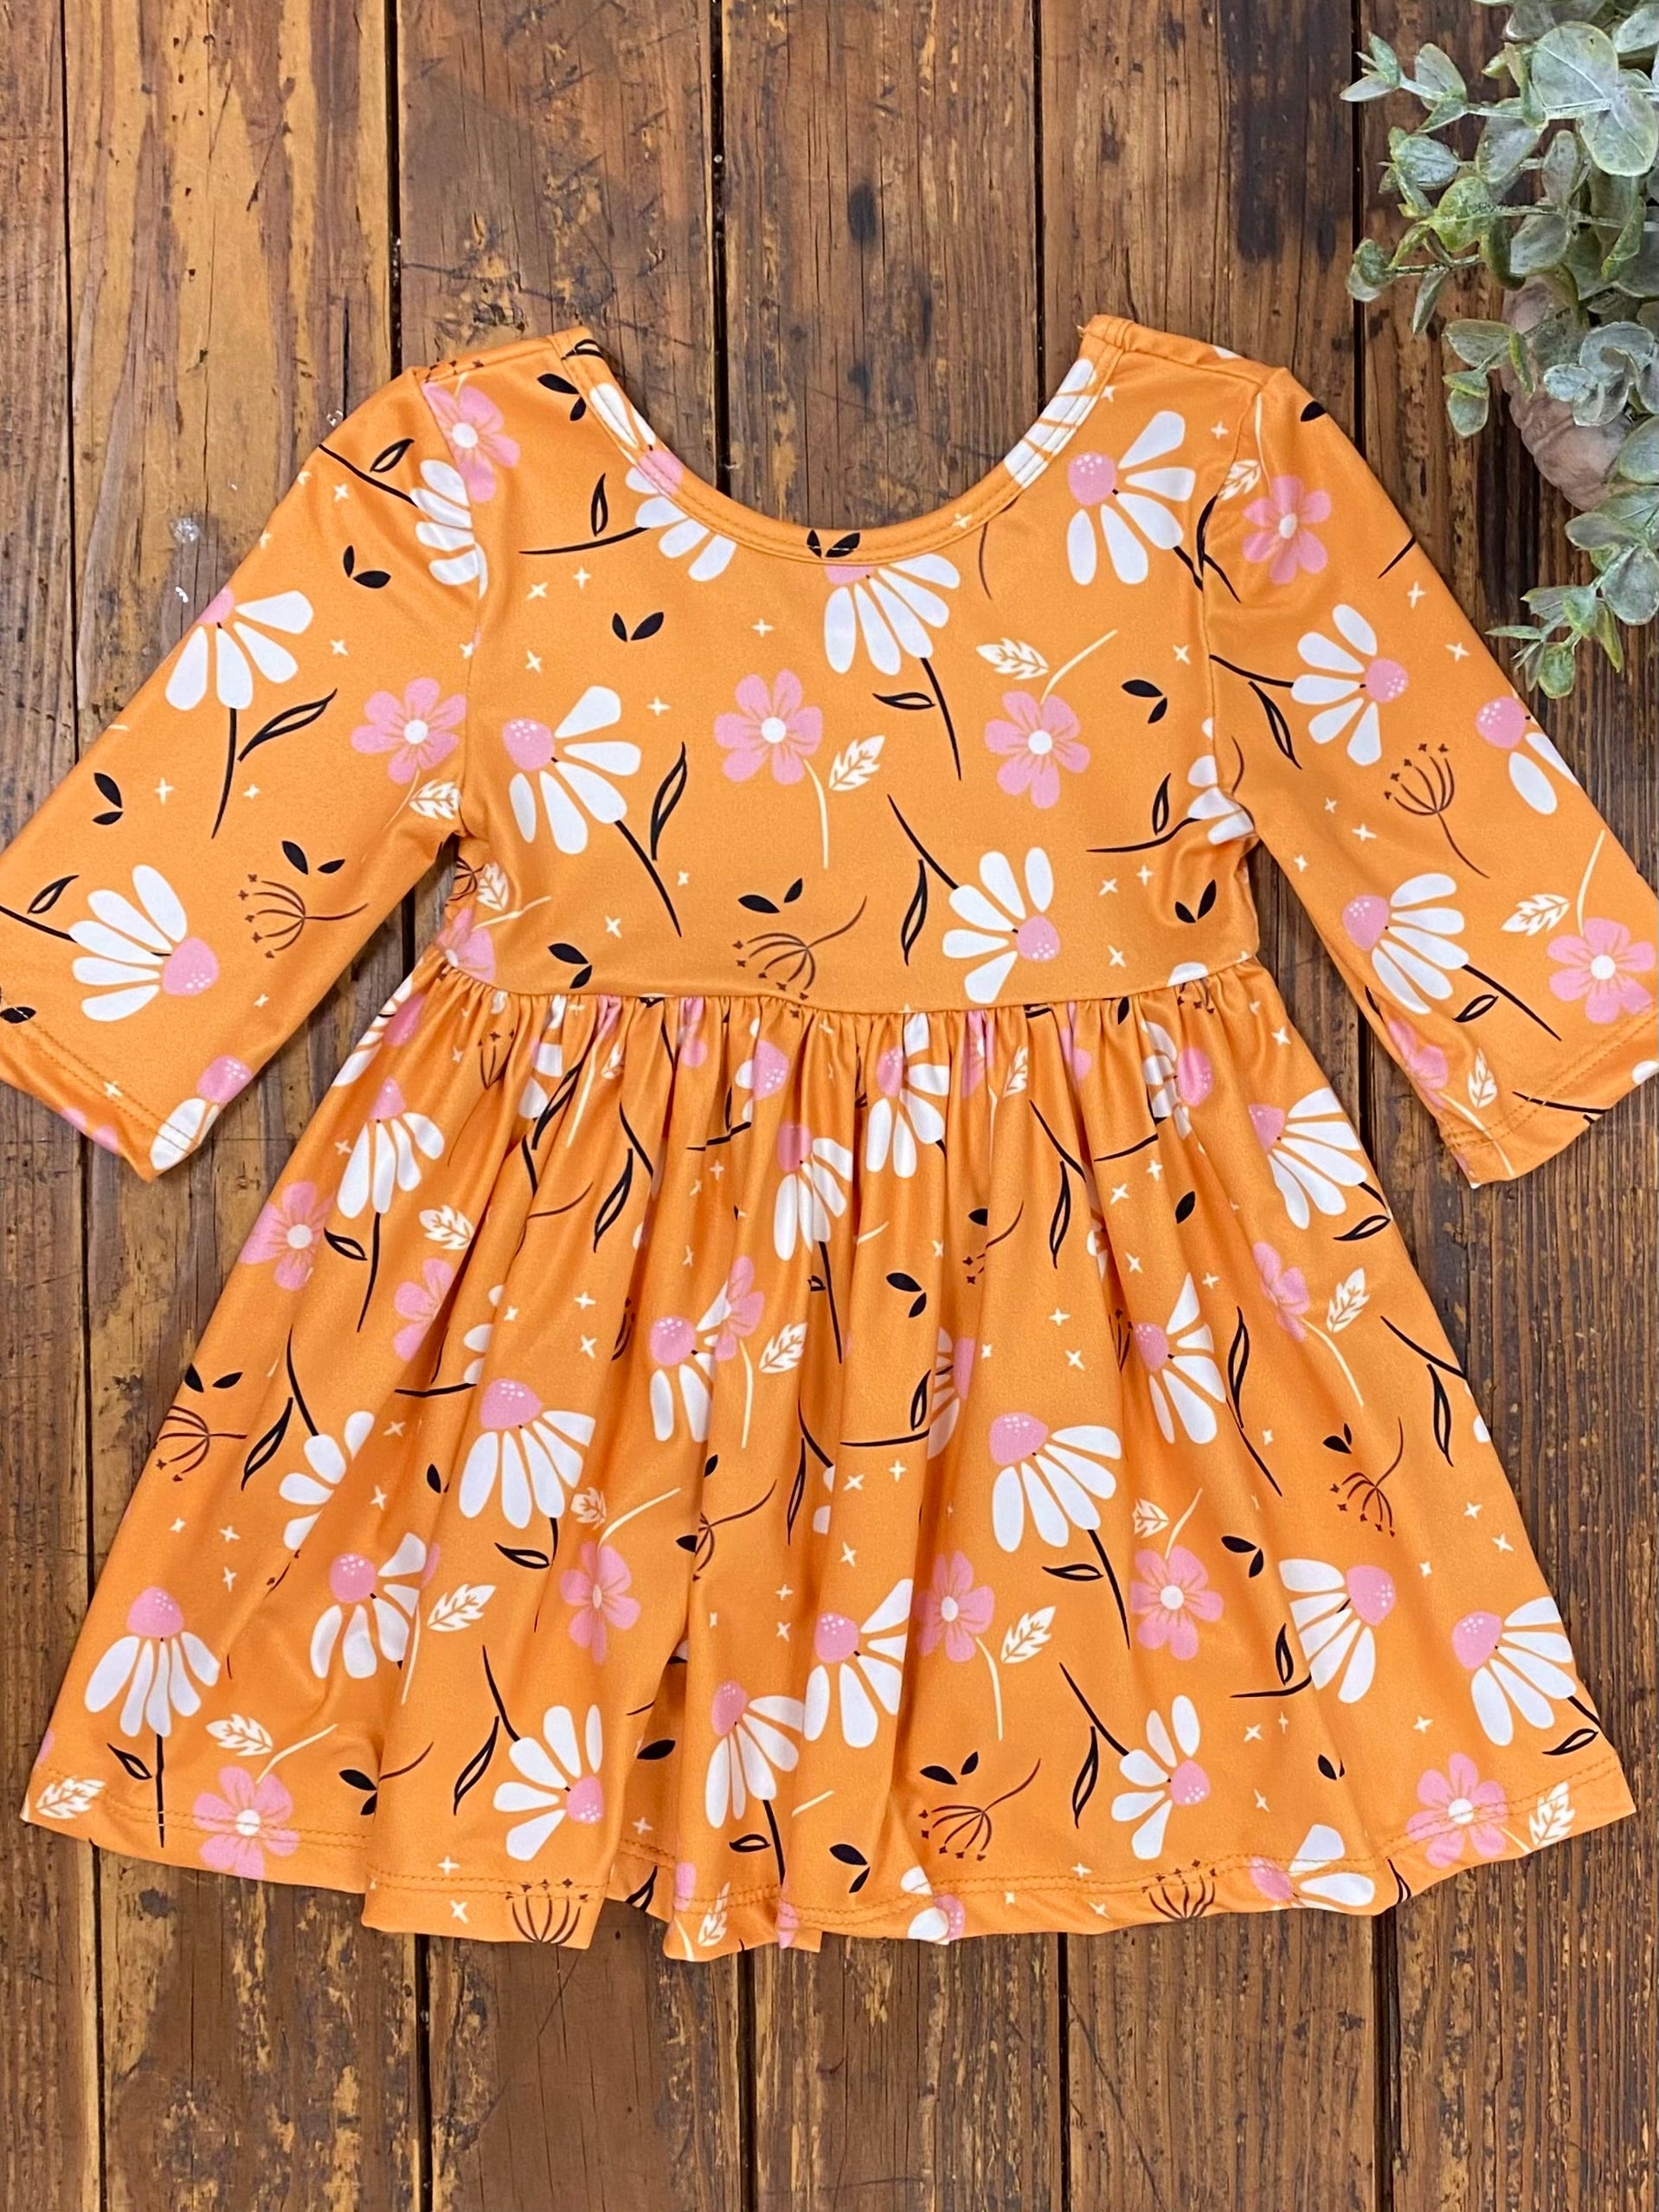 Dandelions in Fall Twirl Dress